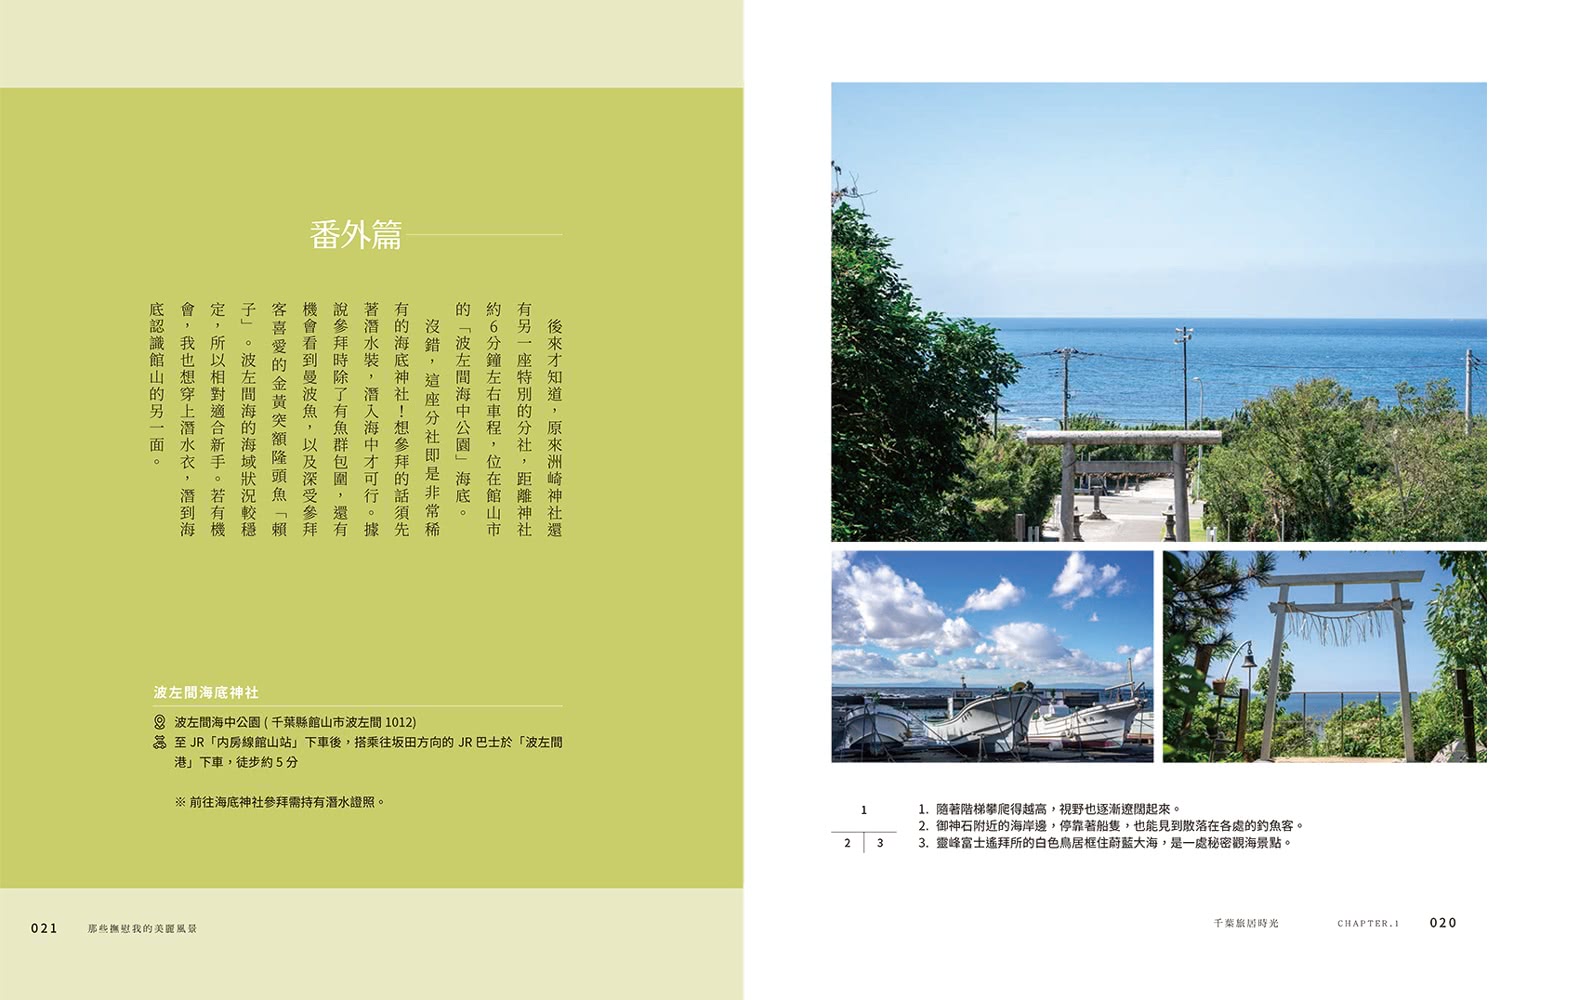 日本 慢慢旅：遇見山城、花季、島嶼、海味、街景日常 2190X四季風物詩